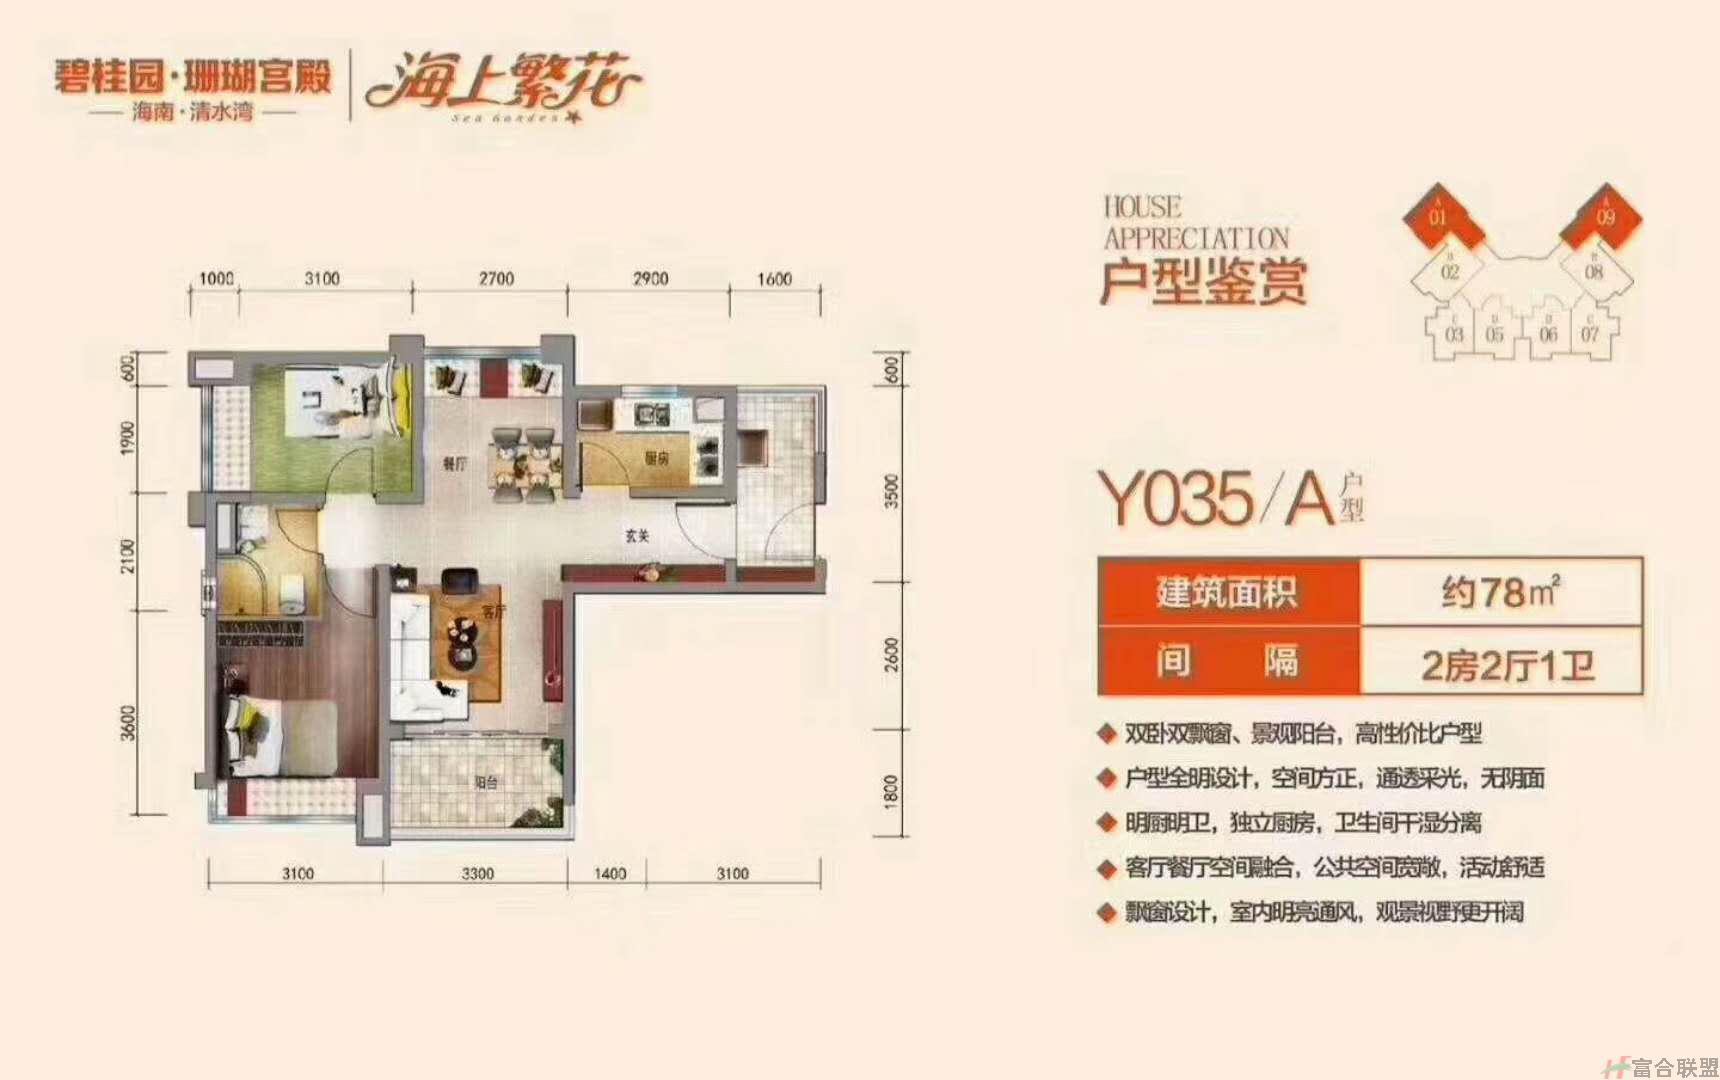 Y035-A 二房二厅一卫 面积约78㎡.jpg